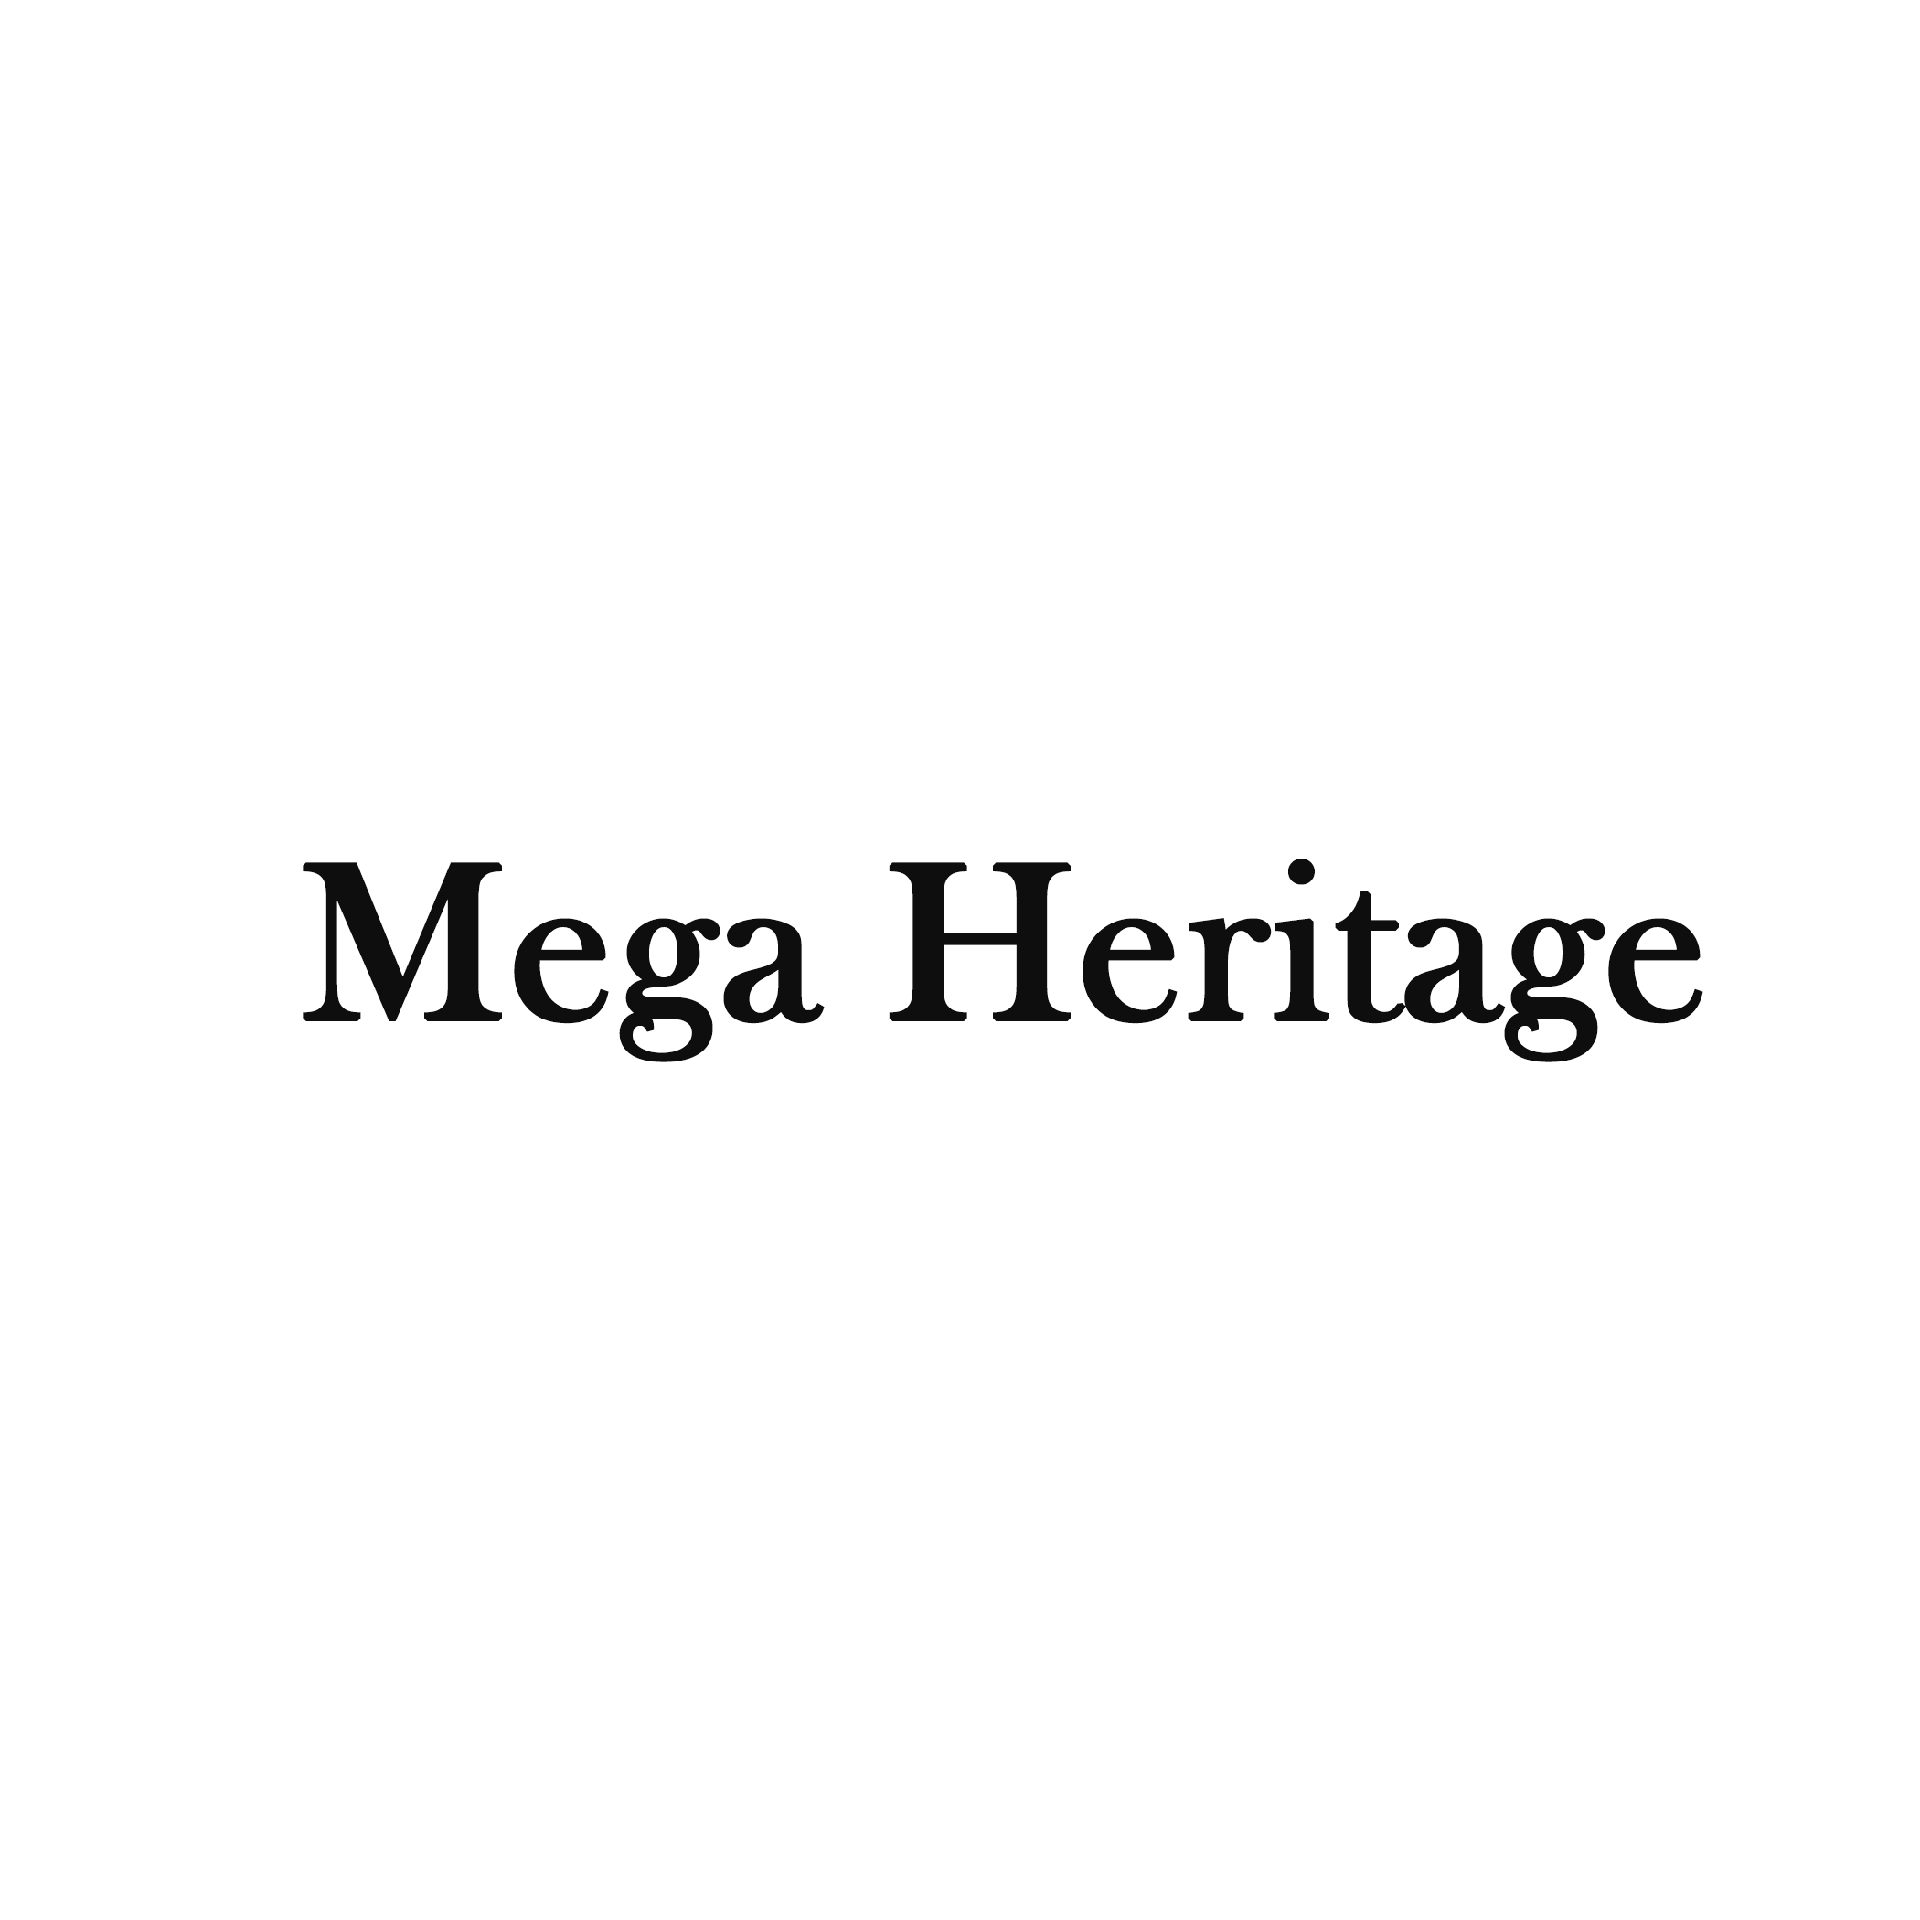 Product Brand: Mega Heritage